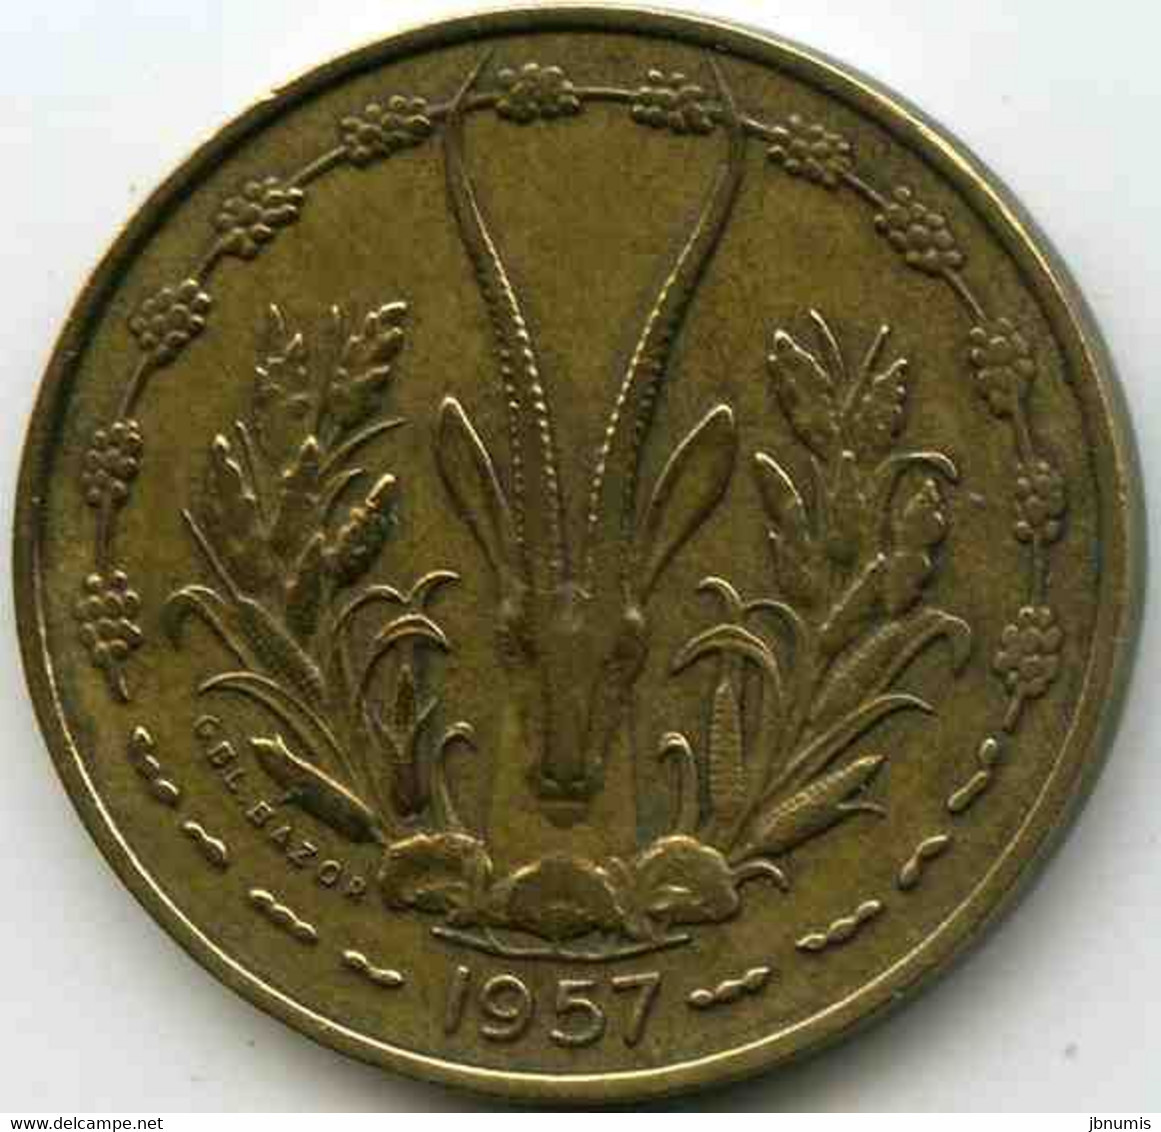 France Afrique Occidentale West Africa Togo 10 Francs 1957 KM 8 - Frans-West-Afrika